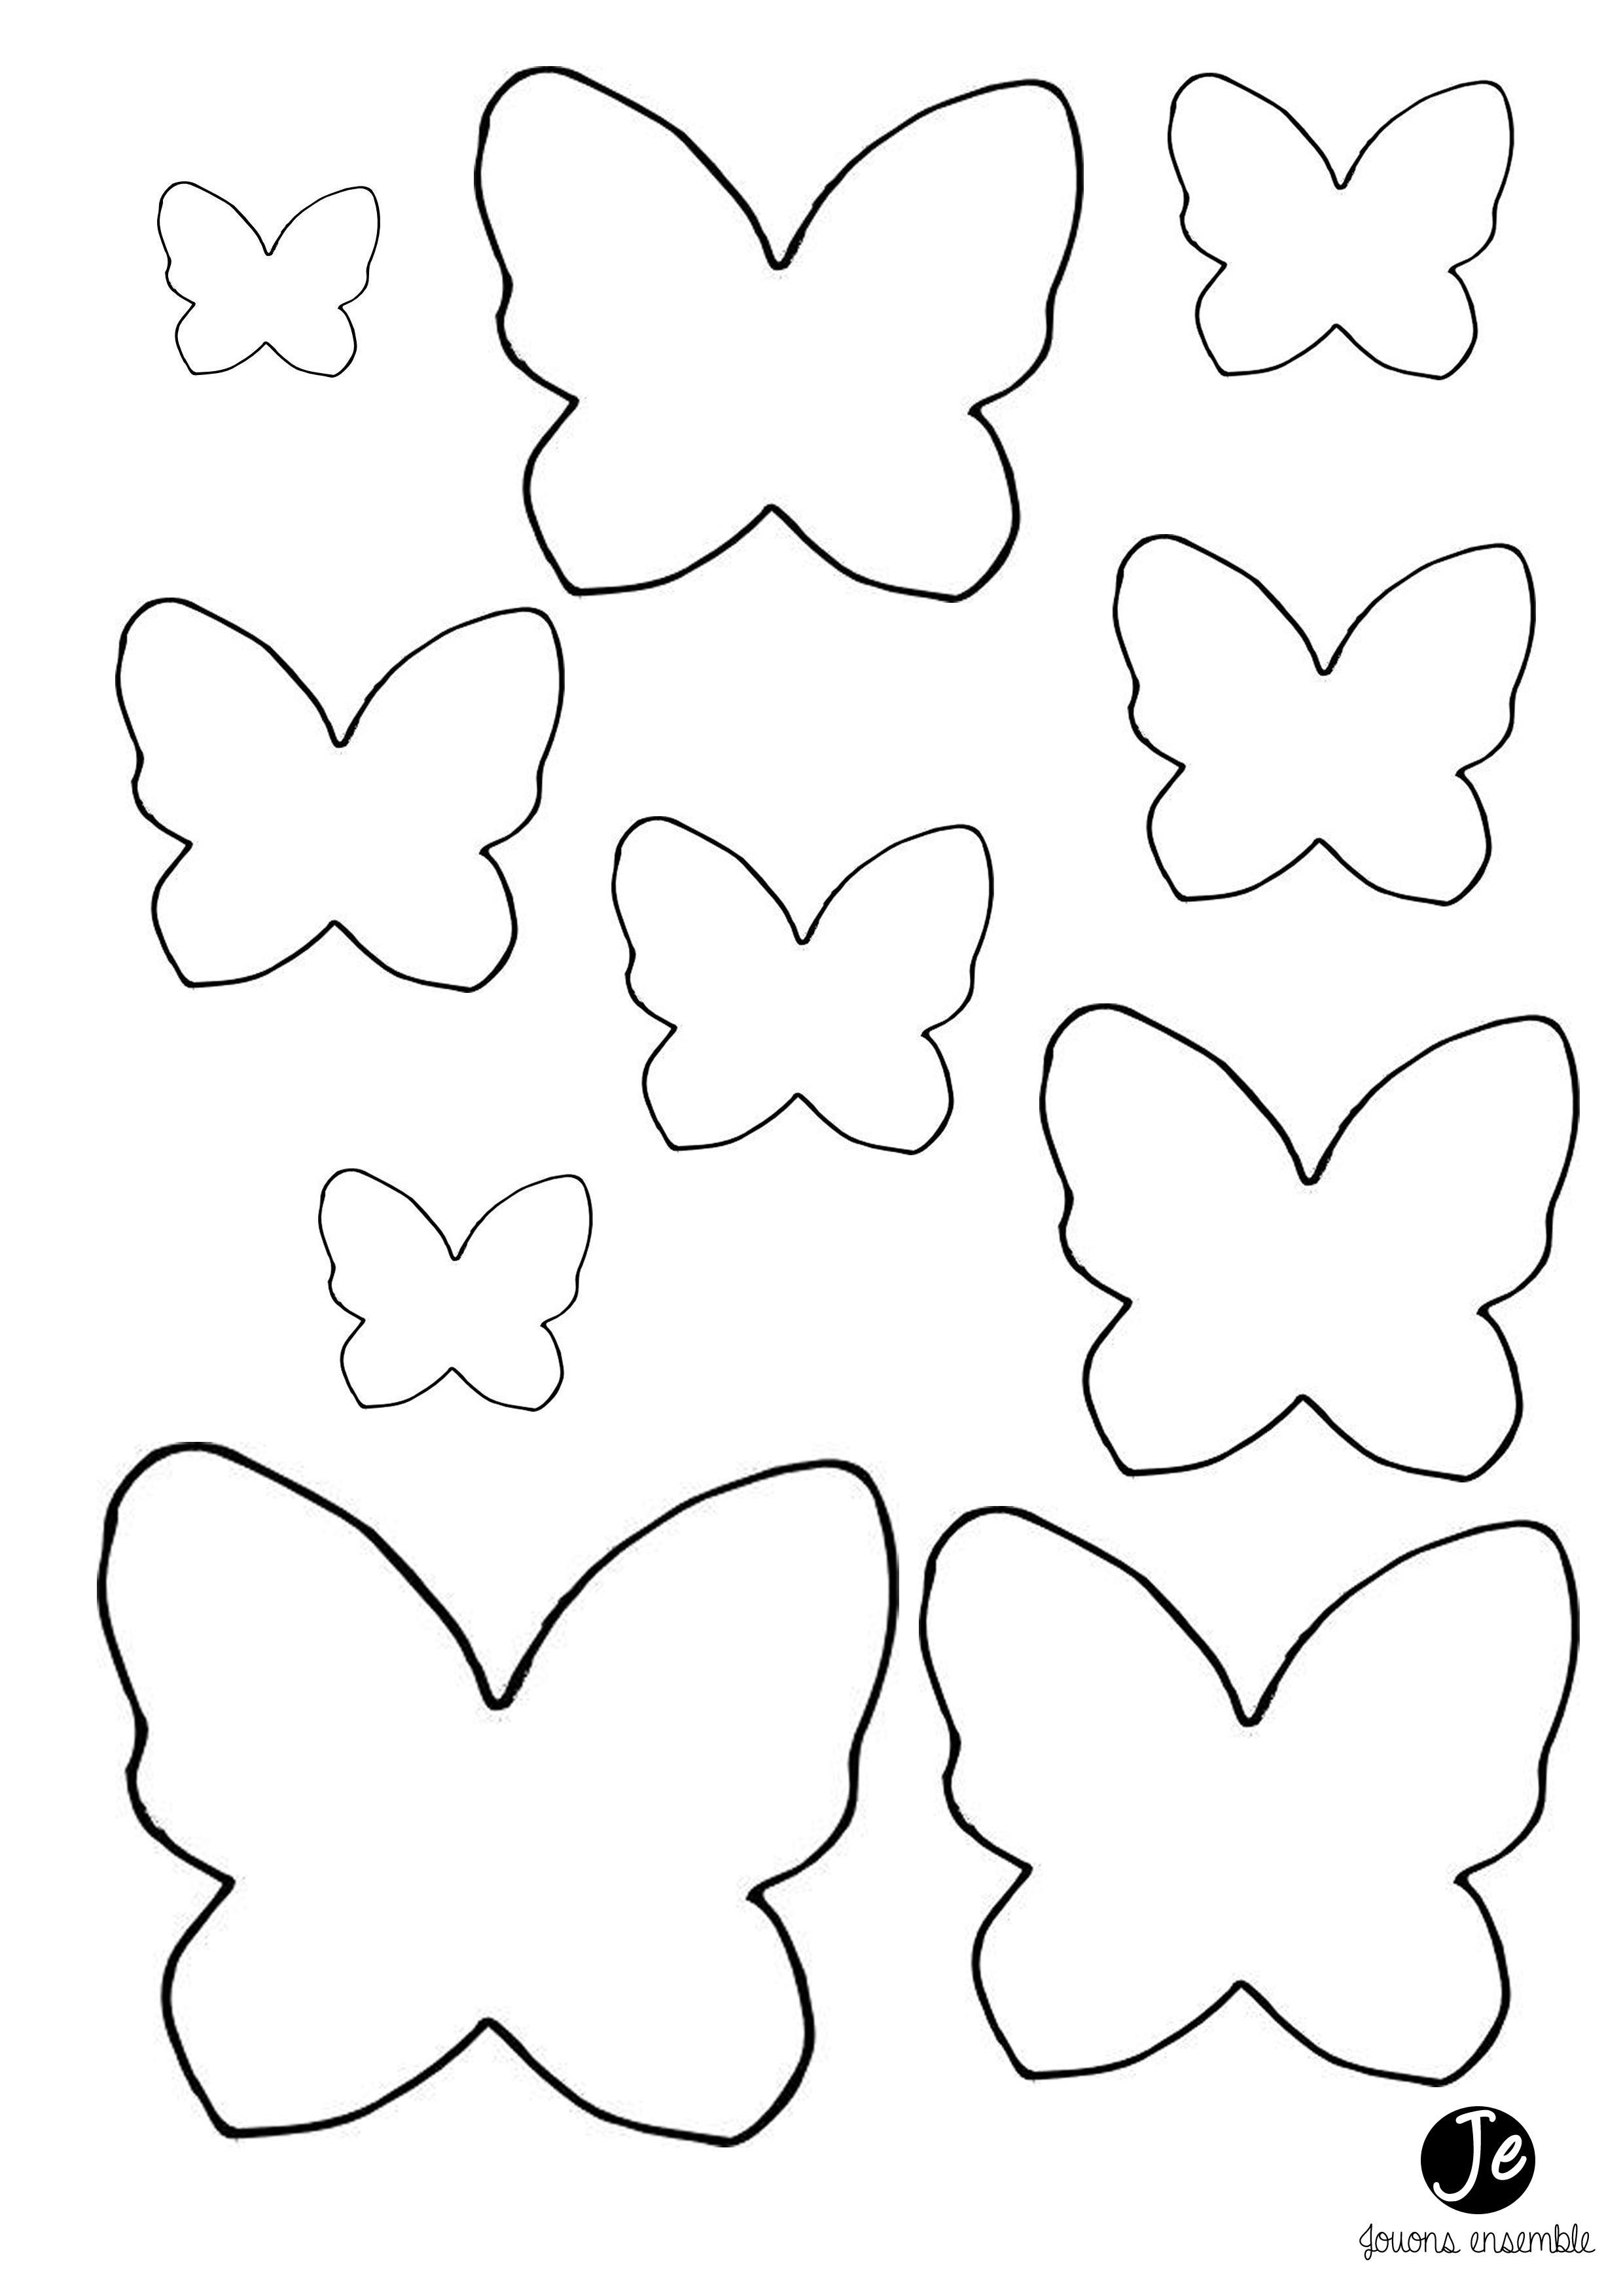 Трафареты бабочек для вырезания из бумаги. Распечатать шаблоны с бабочками.